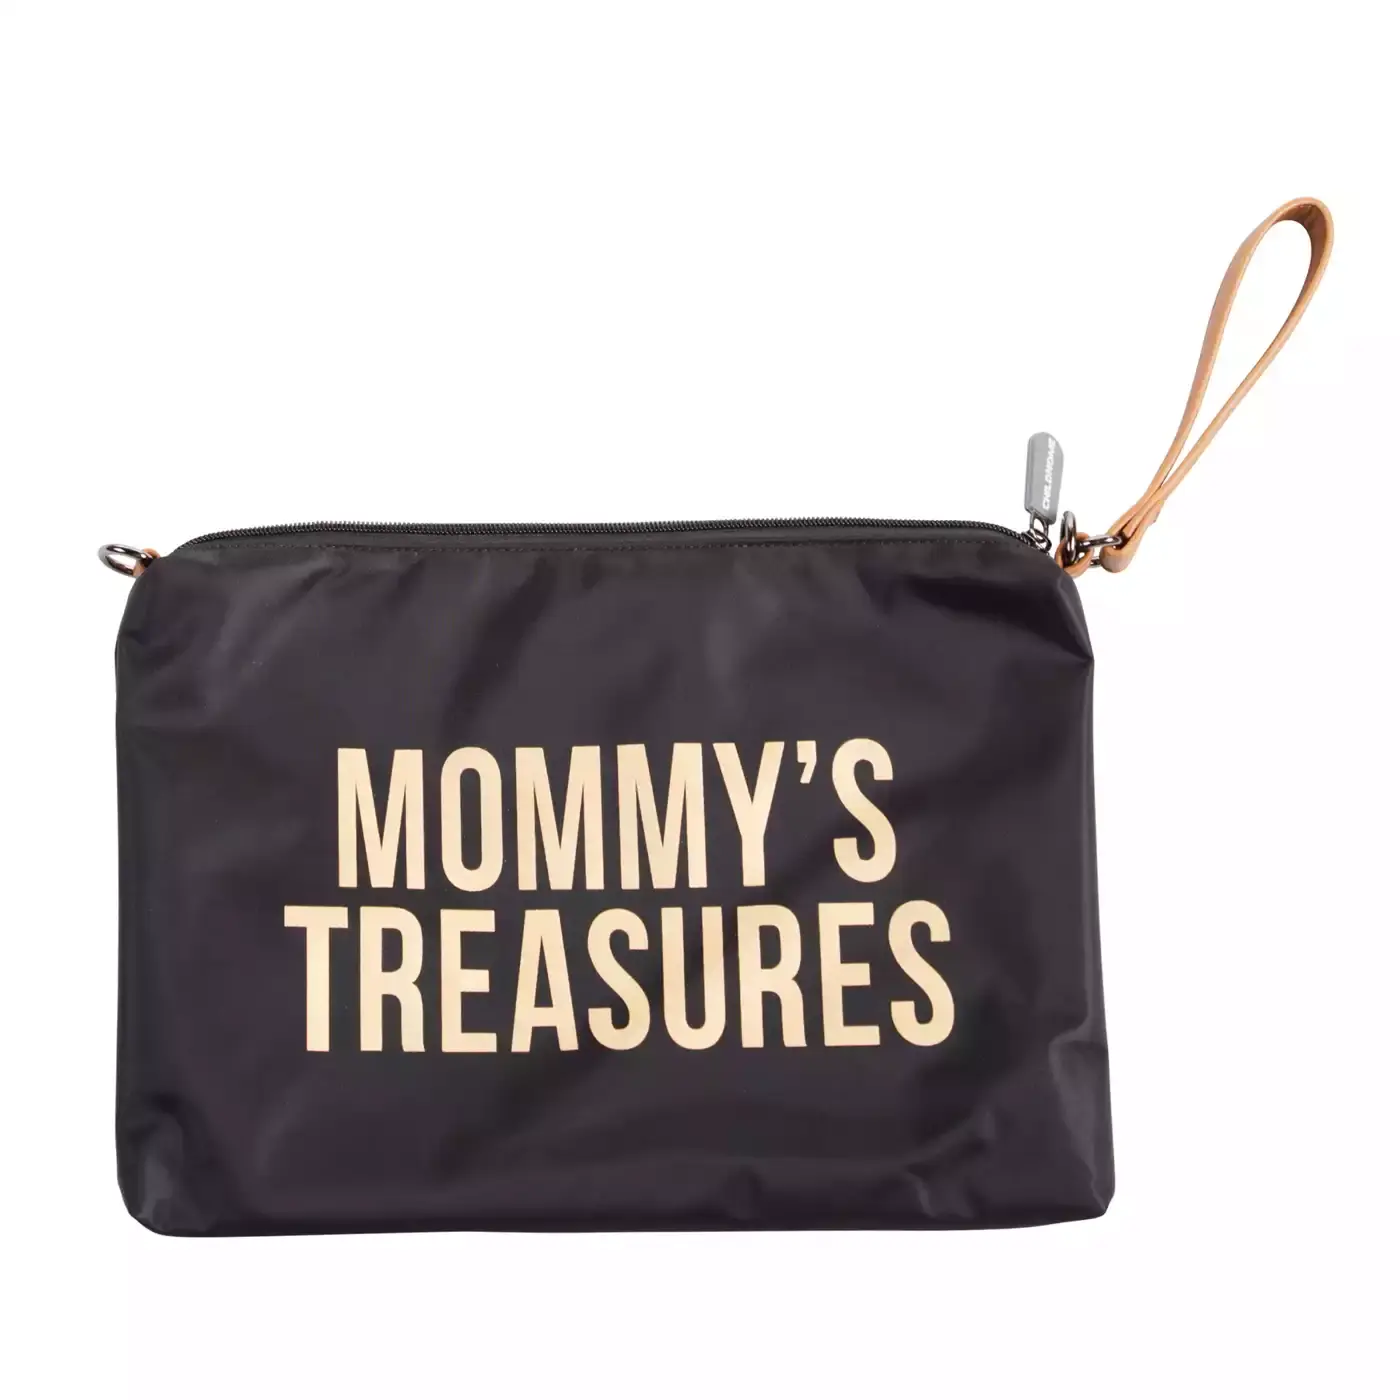 Mommy's Treasures Clutch CHILDHOME Schwarz Gold Gelb 2000580656169 3